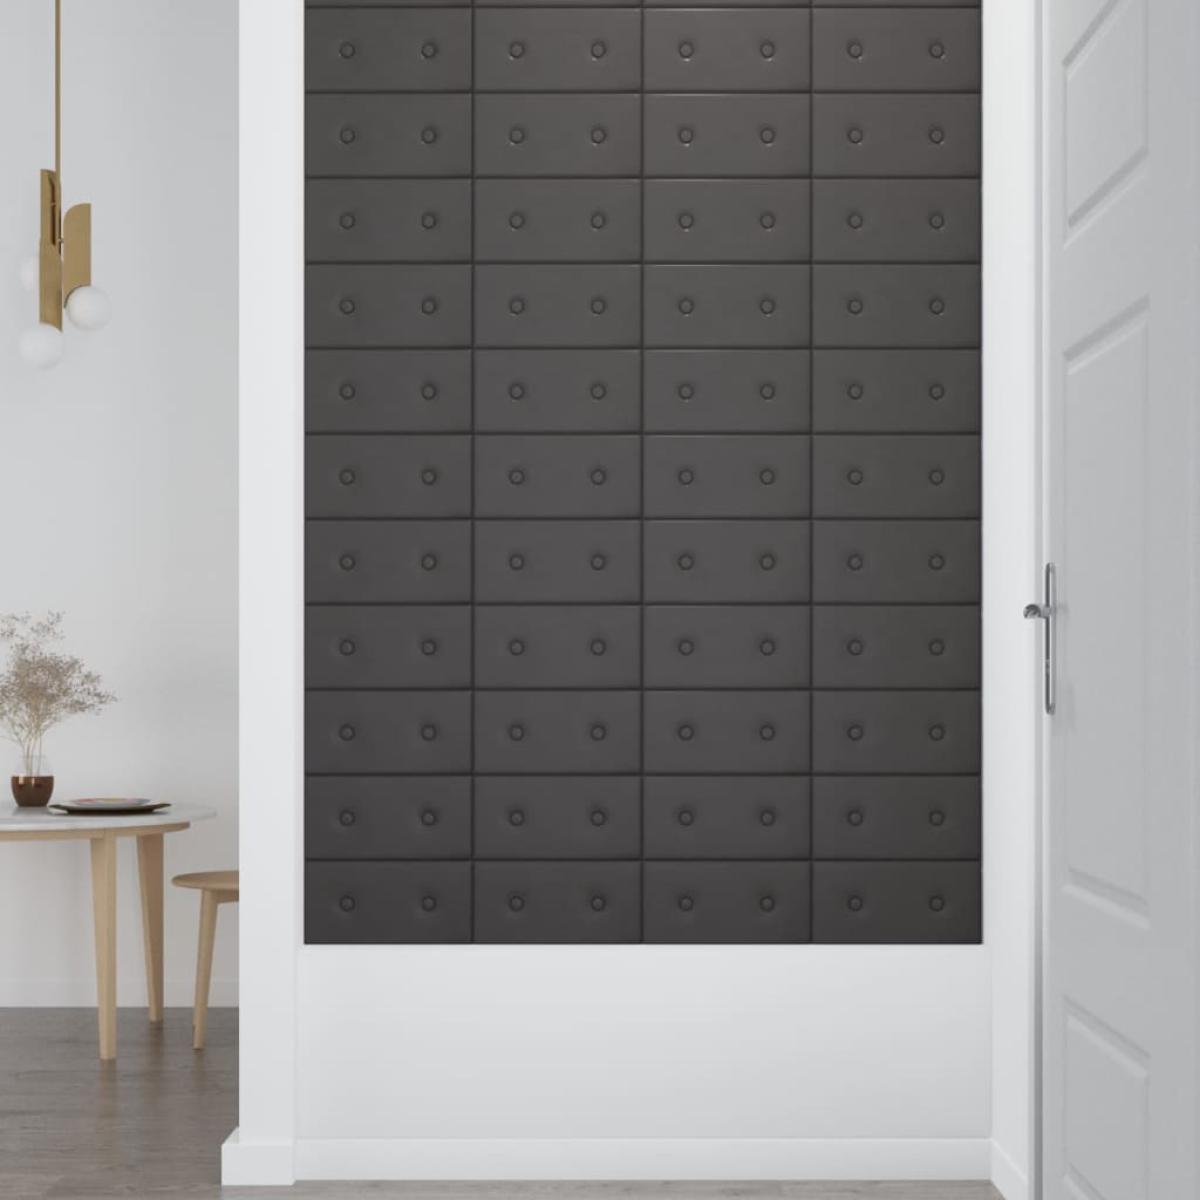 Paneles de pared 12 uds cuero sintético gris 30x15 cm 0,54 m²